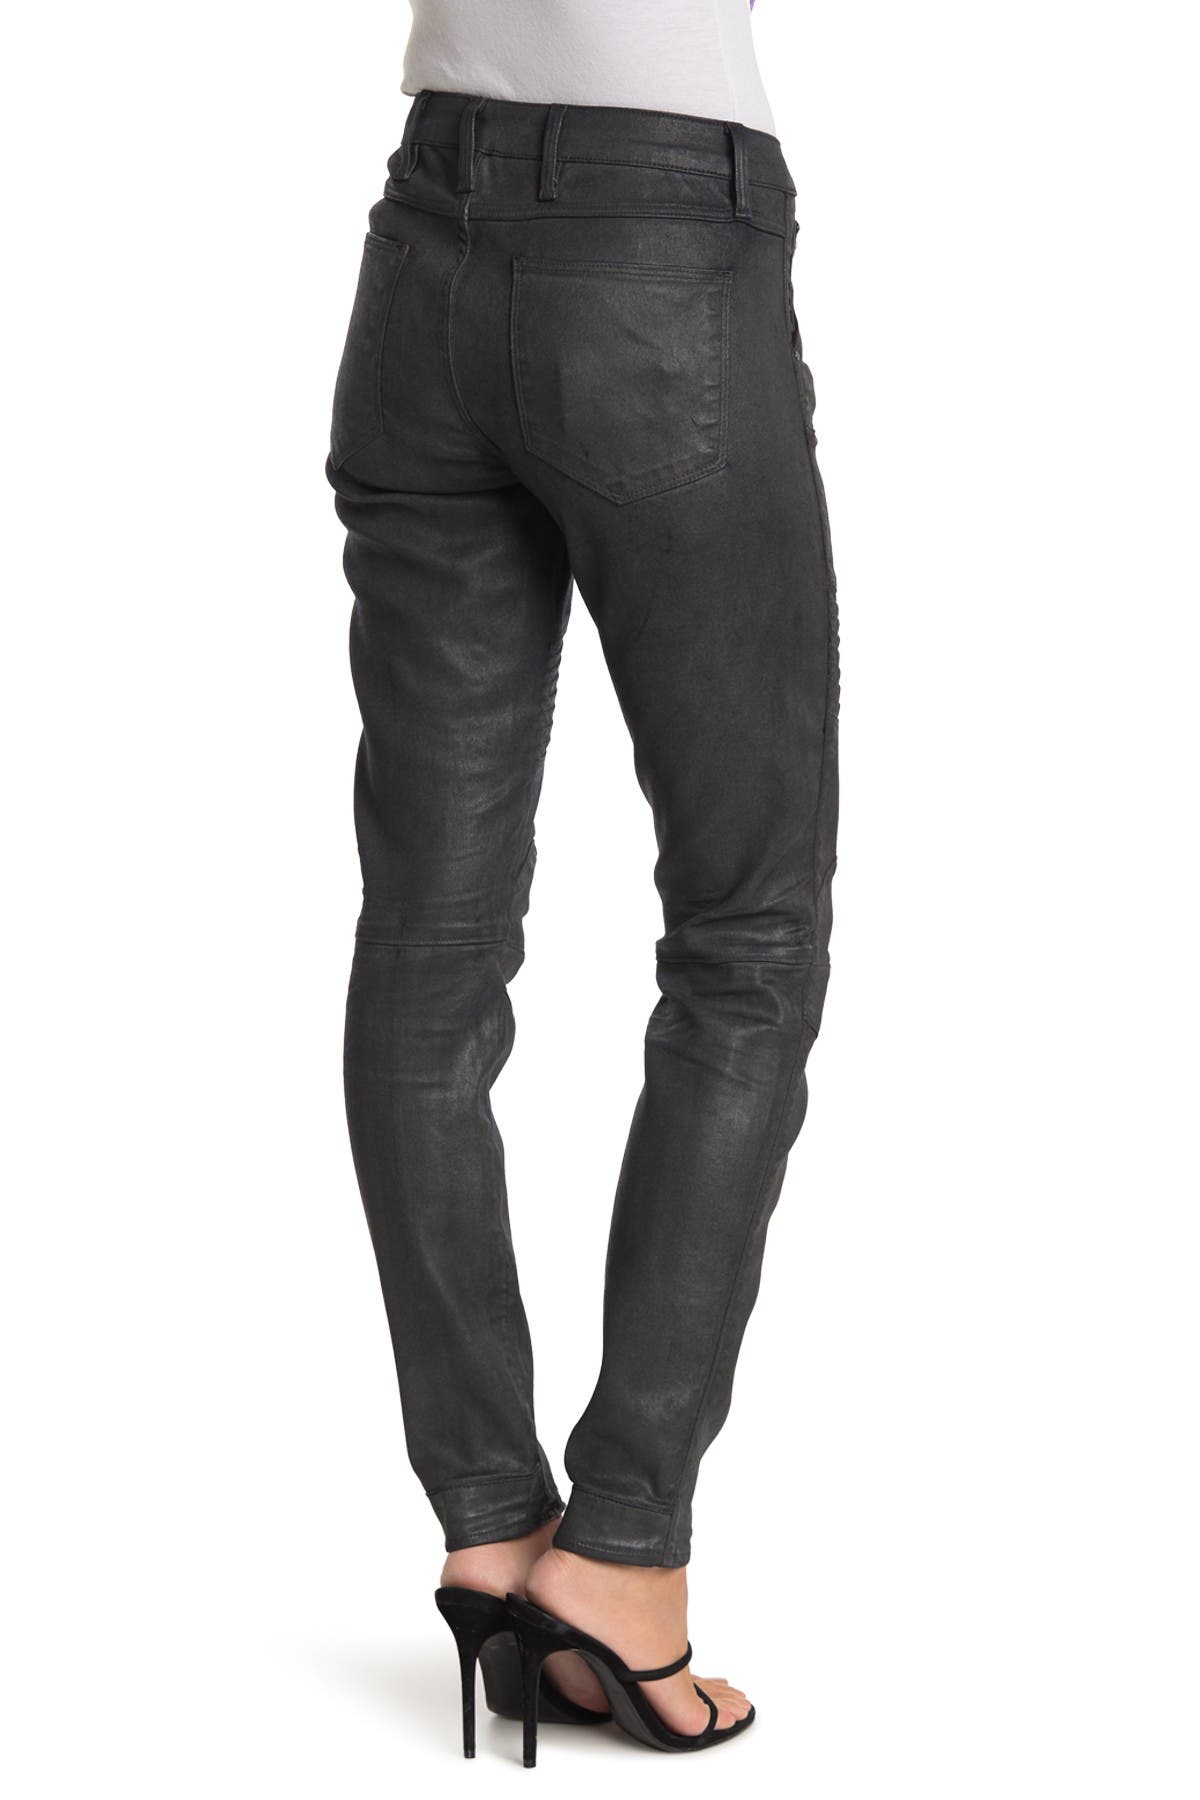 5620 custom mid skinny jeans